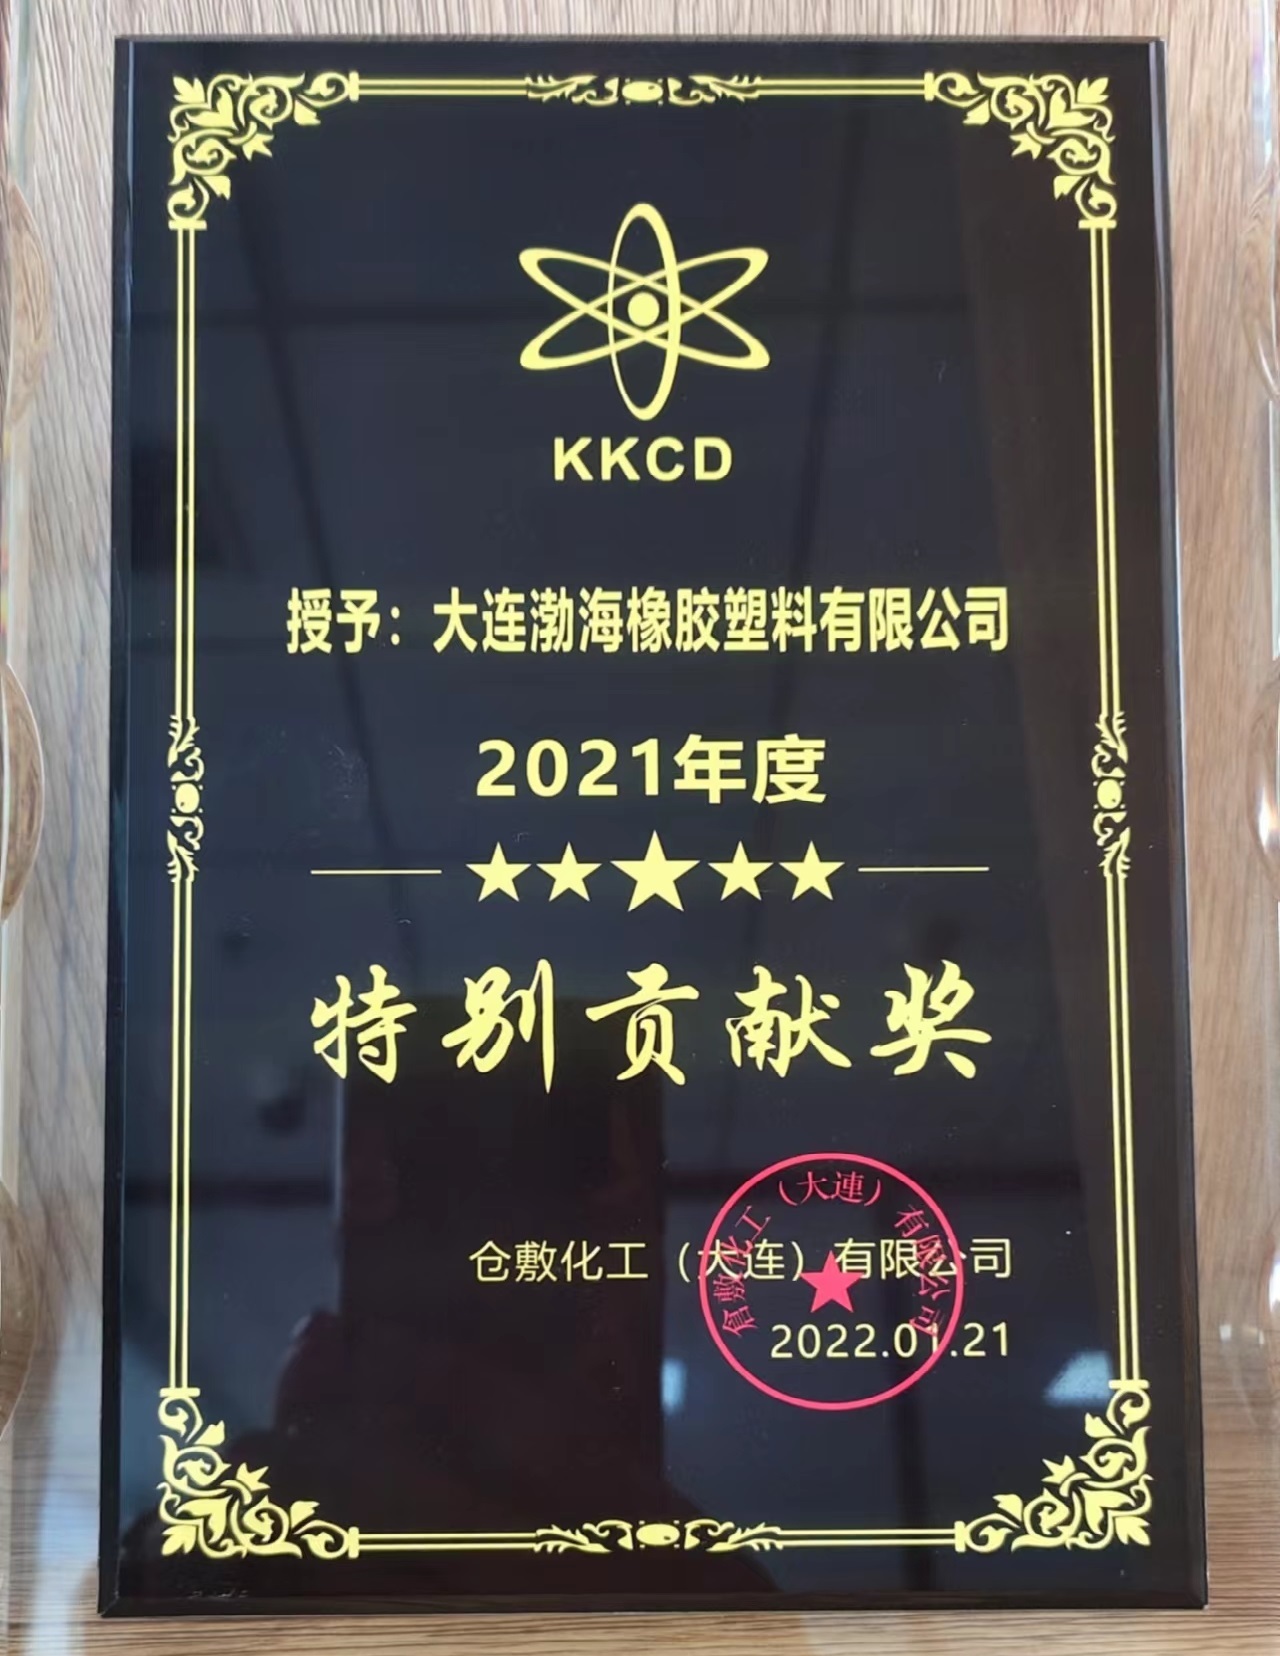 2021 Special Contribution Award